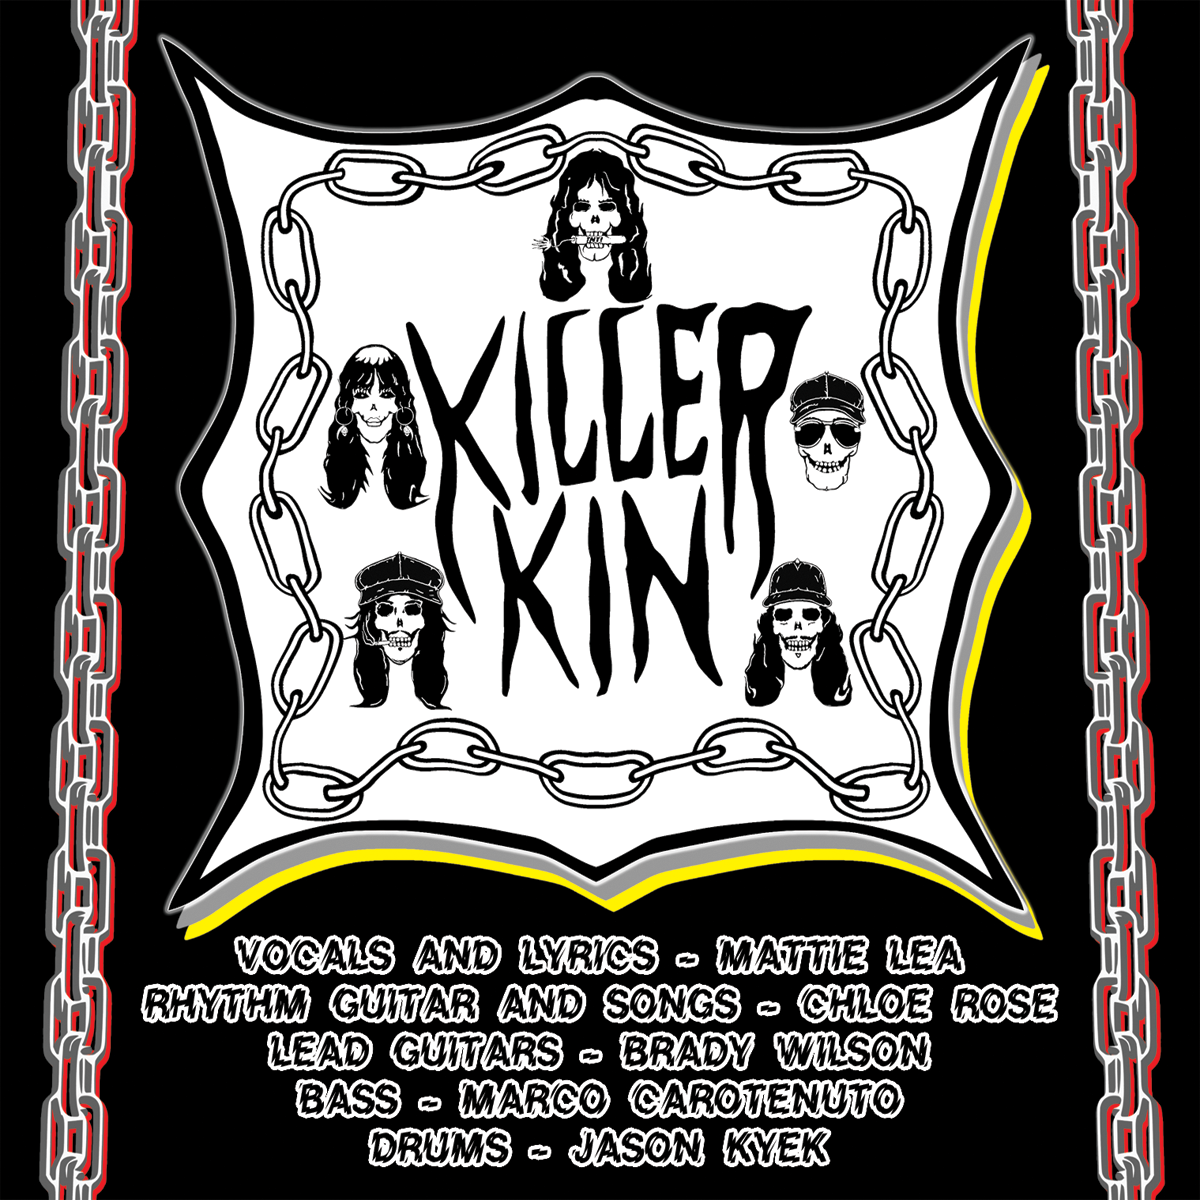 Killer Kin- S/T CD ~WITH 2 BONUS TRACKS!